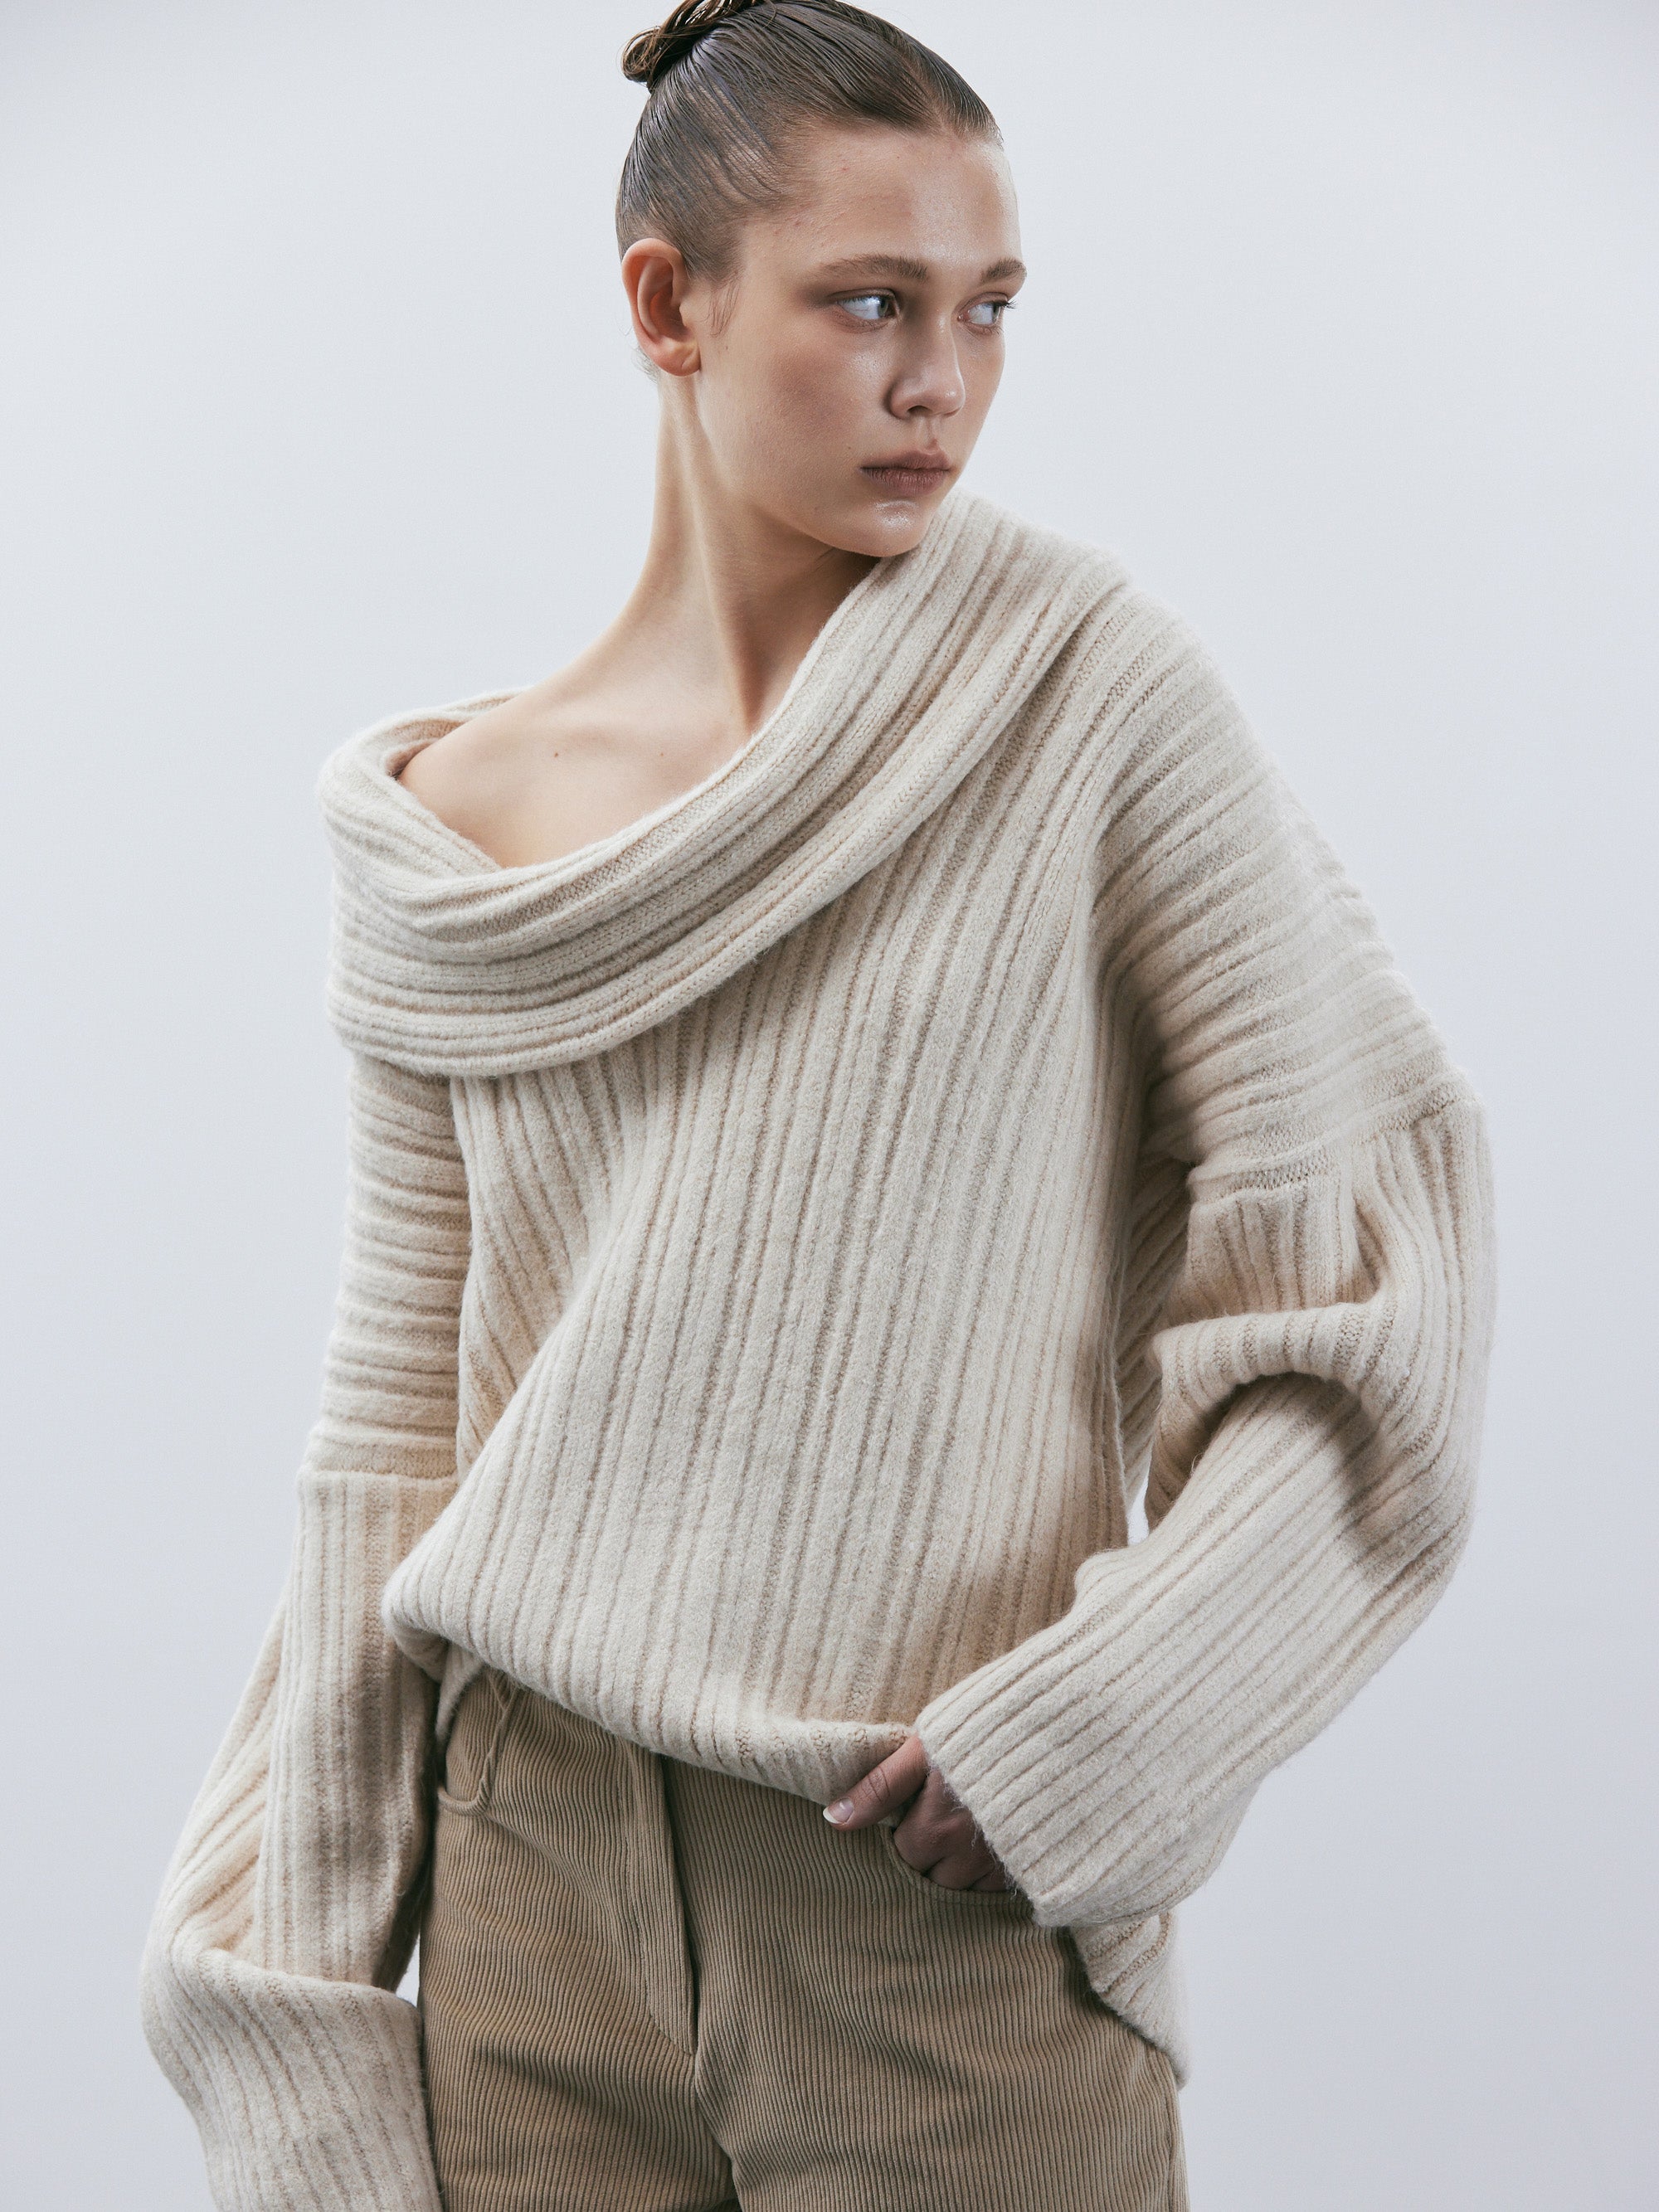 Inverno Sweater - Knitting Pattern by TheKnitStitch